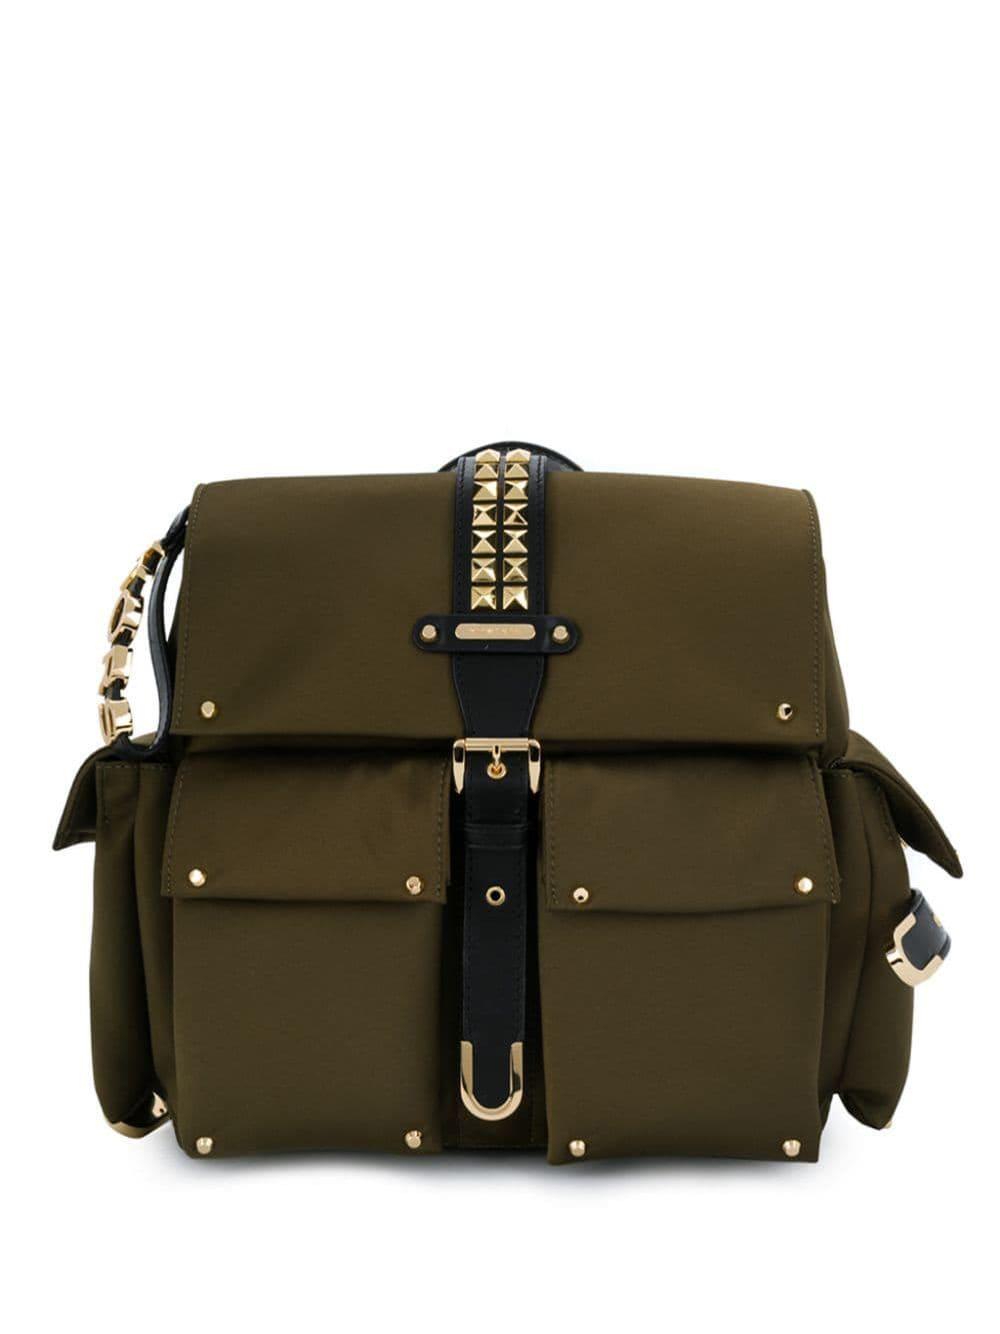 𝕊𝔸𝕃𝔼!! Michael Kors Olivia Medium Flap Backpack Studded Satin